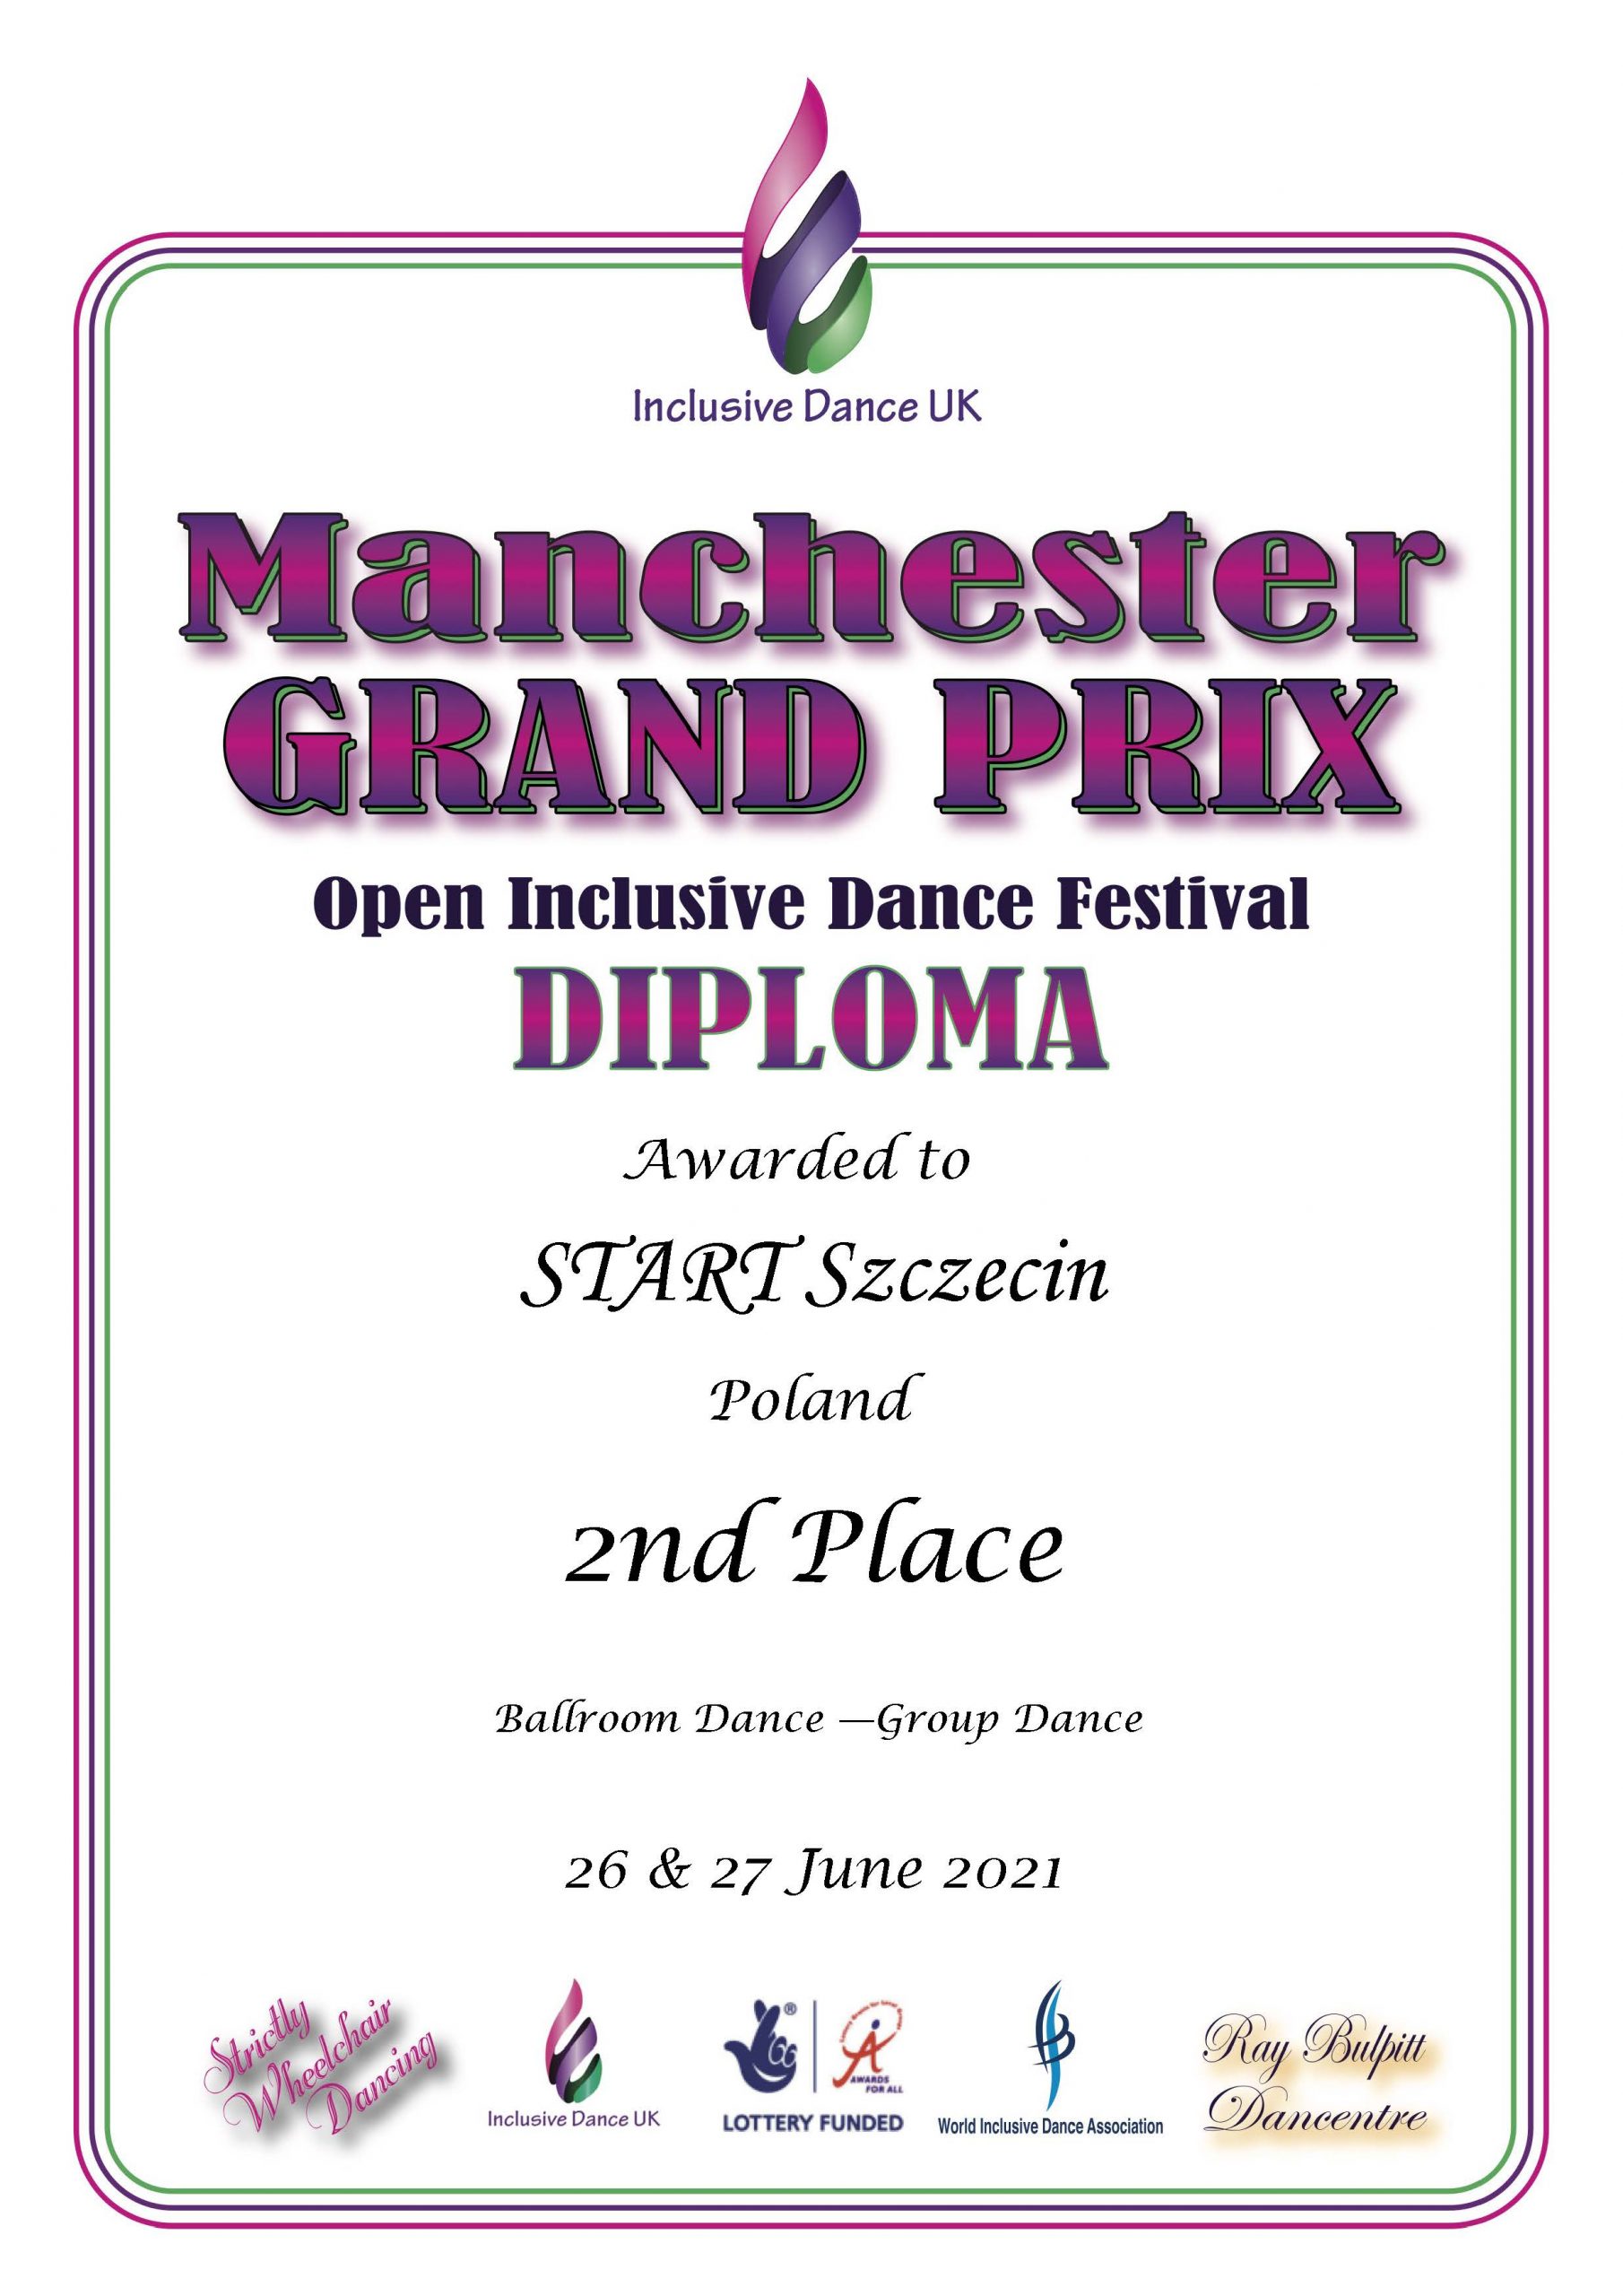 Manchester Grand Prix – Open Inclusive Dance Festival